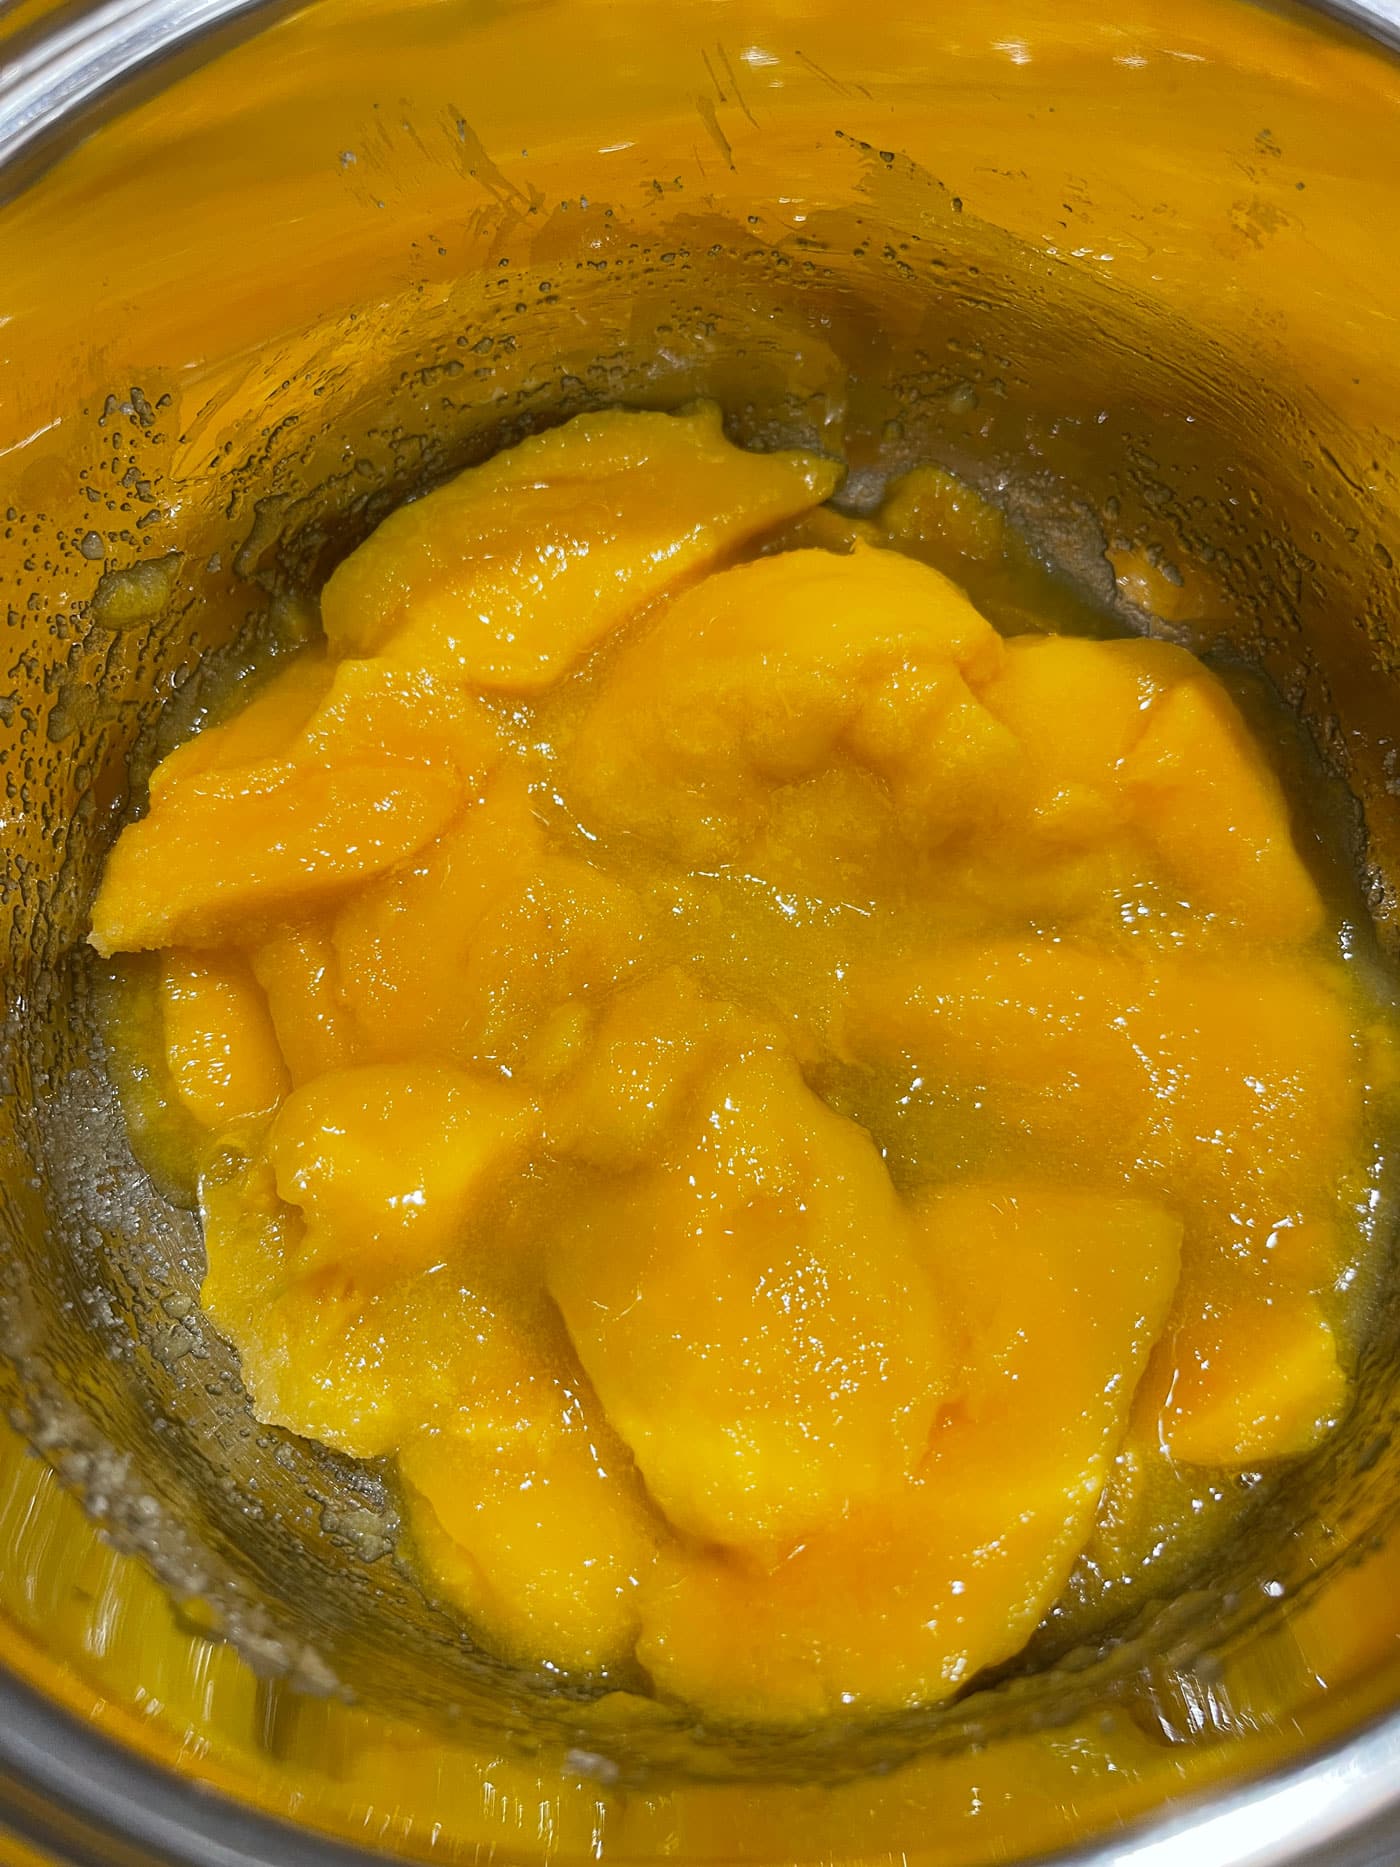 mangoes, sugar, lemon juice mixed together in saucepan